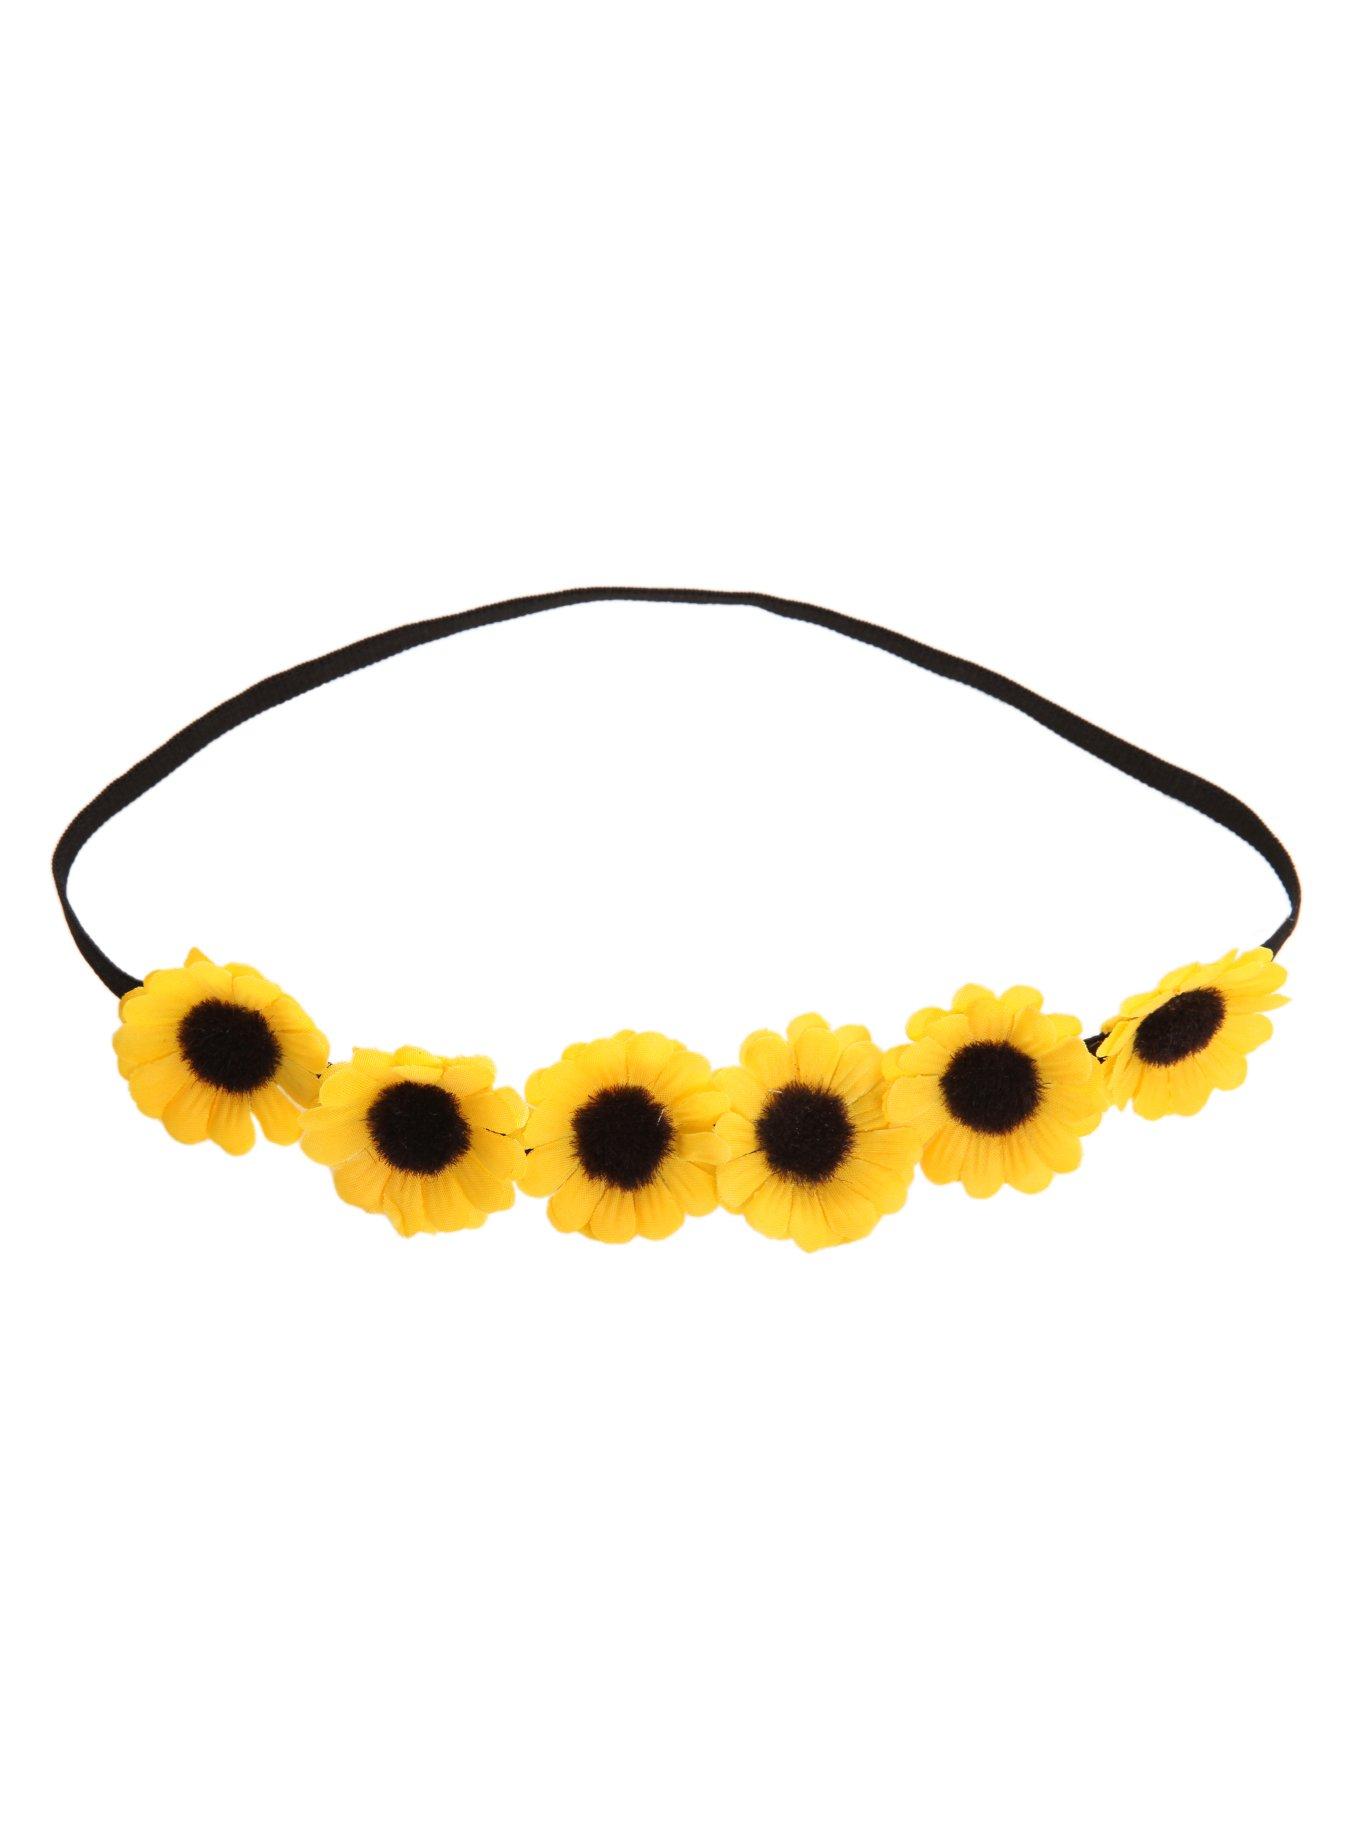 LOVEsick Yellow Daisy Stretchy Headband, , alternate